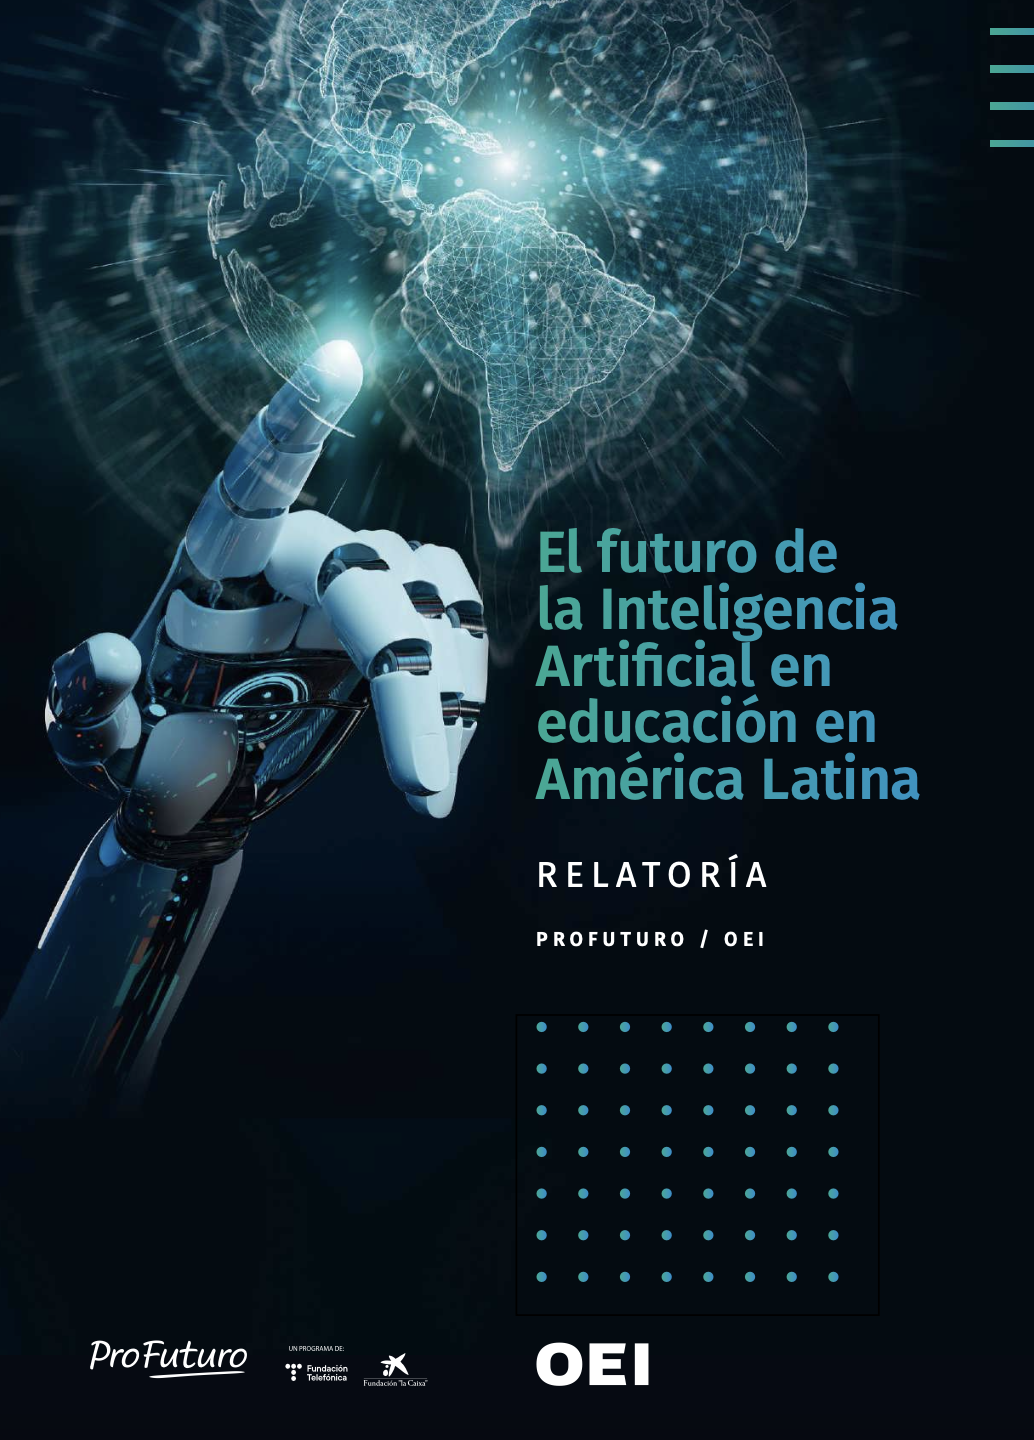 Relatoría: El futuro de la Inteligencia Artificial en educación en América Latina